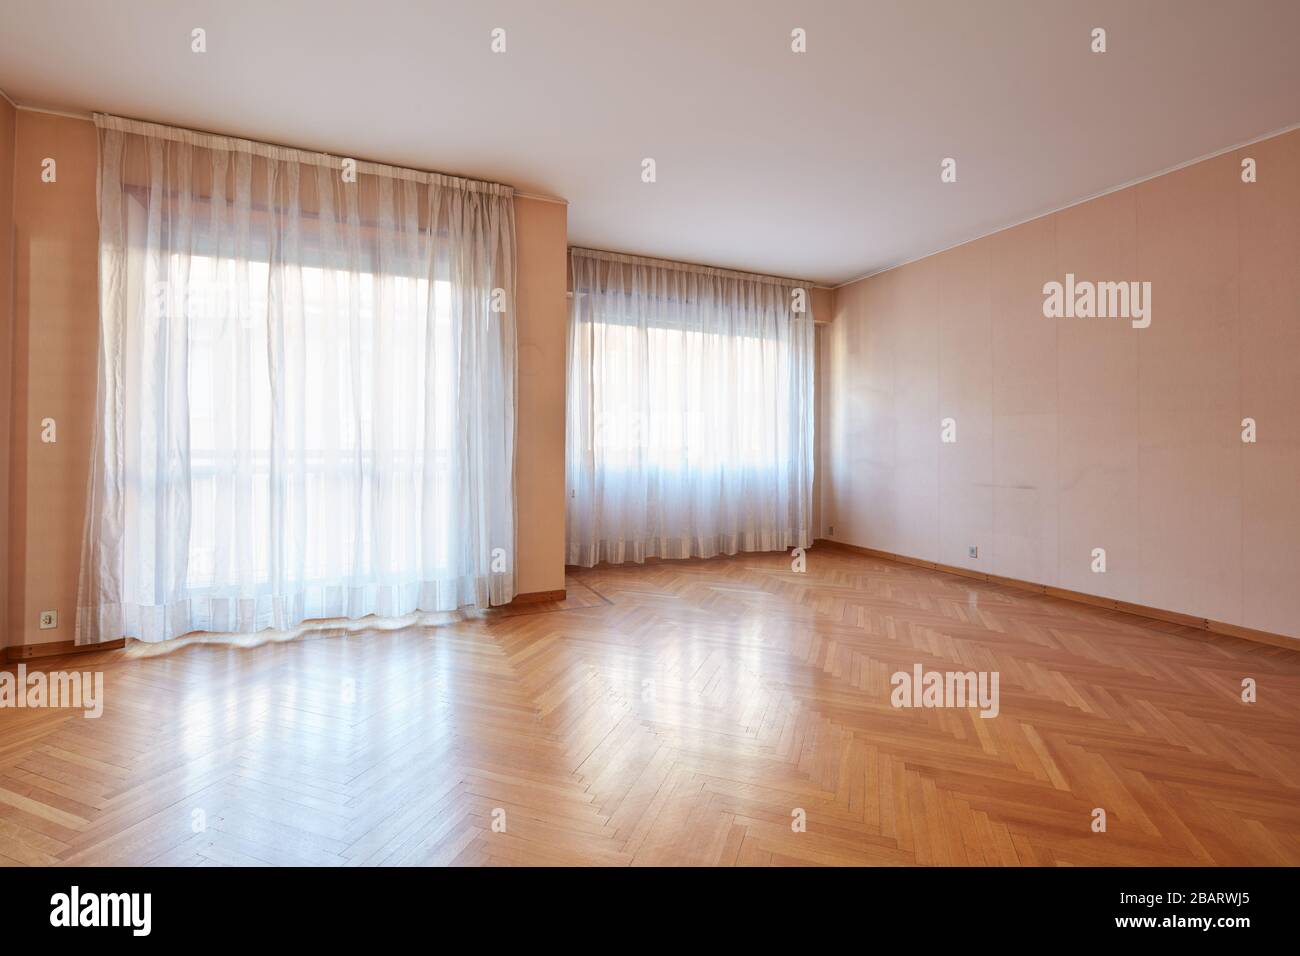 Ampia camera vuota con pavimento in legno e tende bianche all'interno dell'appartamento Foto Stock